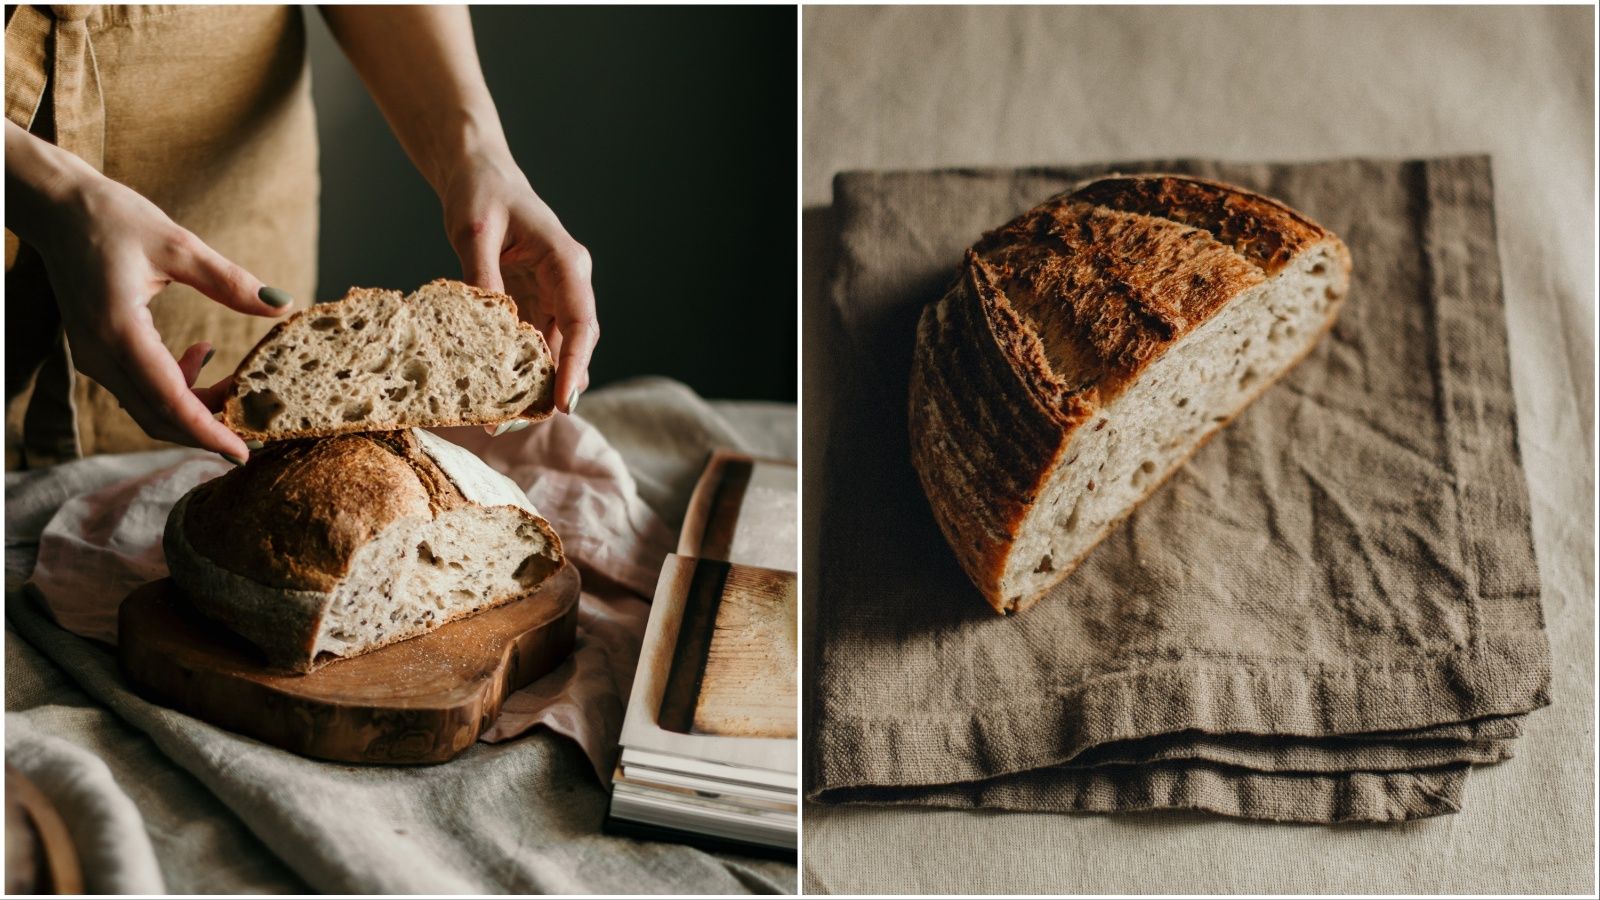 Ako kod kuće želite napraviti vrhunski sourdough kruh, sada to možete bez puno napora